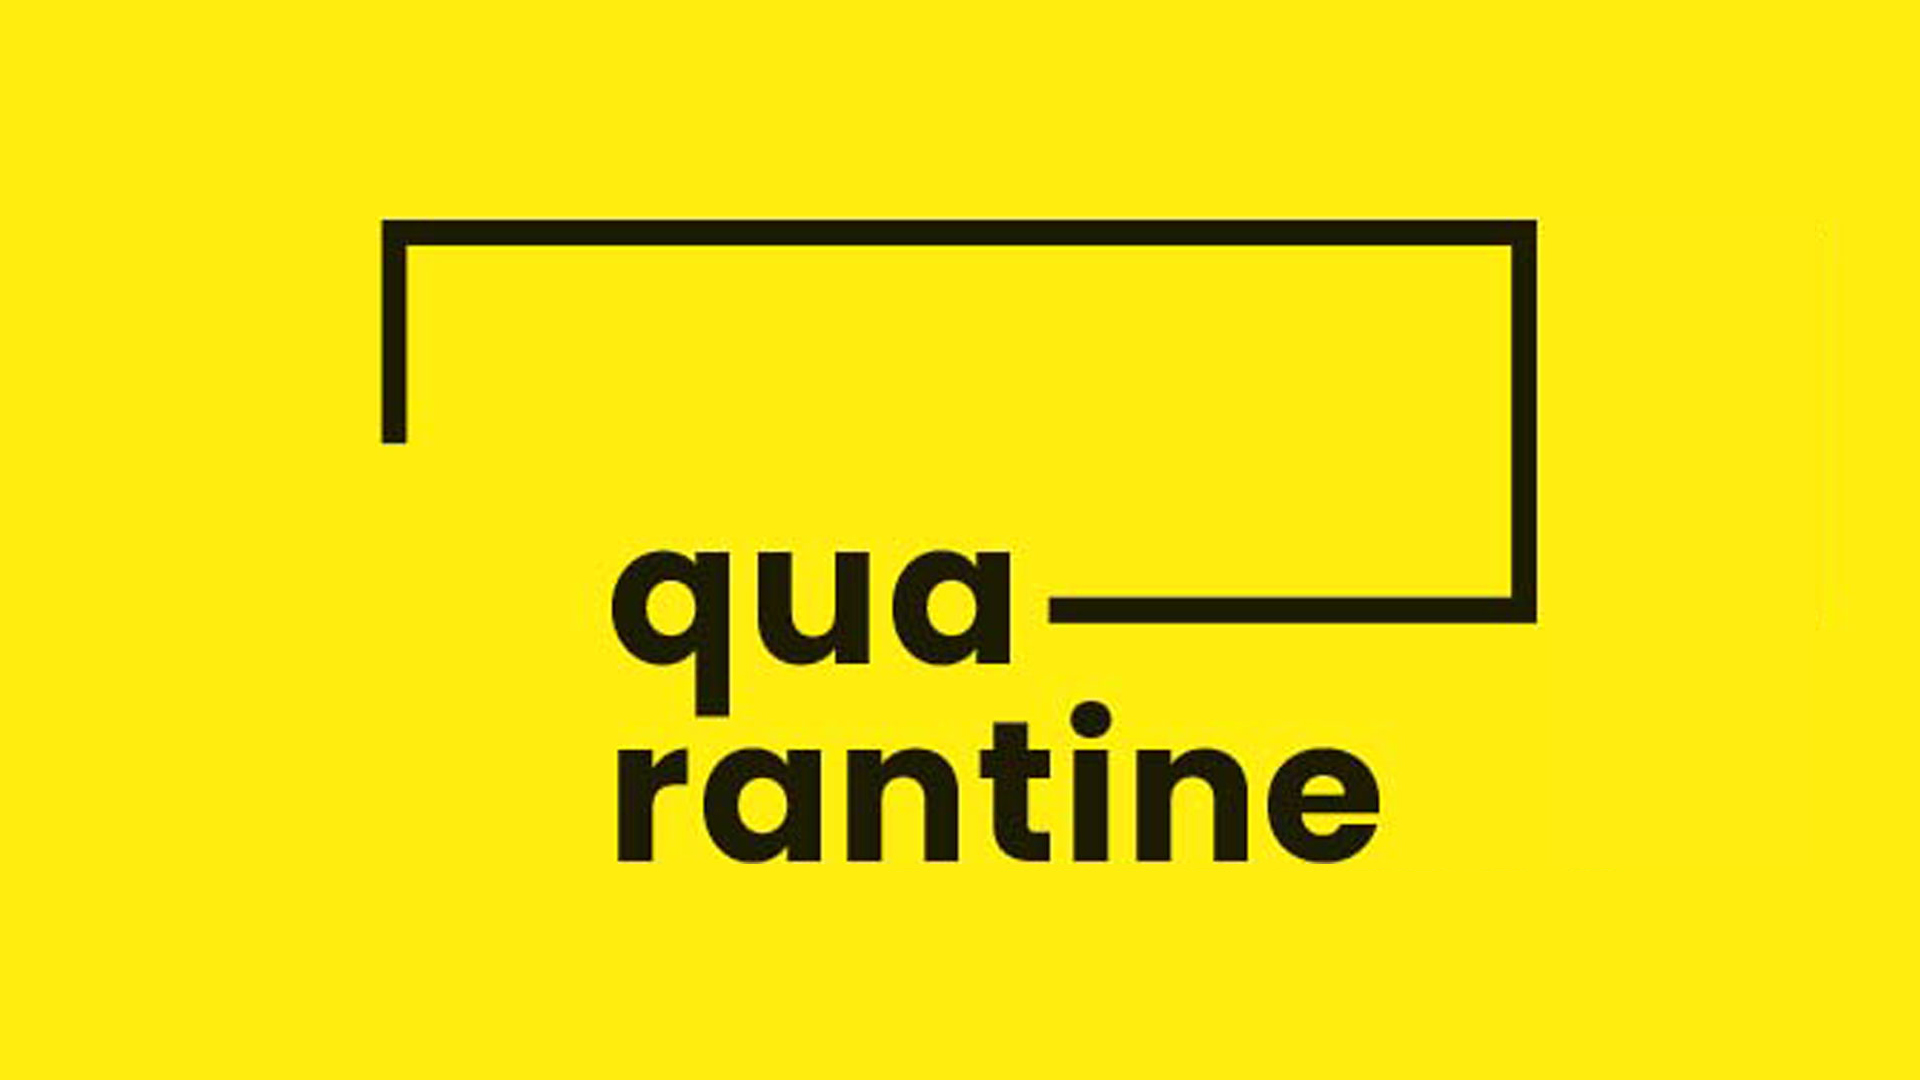 Logo Quarentine: sobre fundo amarelo, em letras pretas, a sílaba qua em cima e rantine em baixo. Da letra a sai uma linha para a direita, que forma um retângulo incompleto.